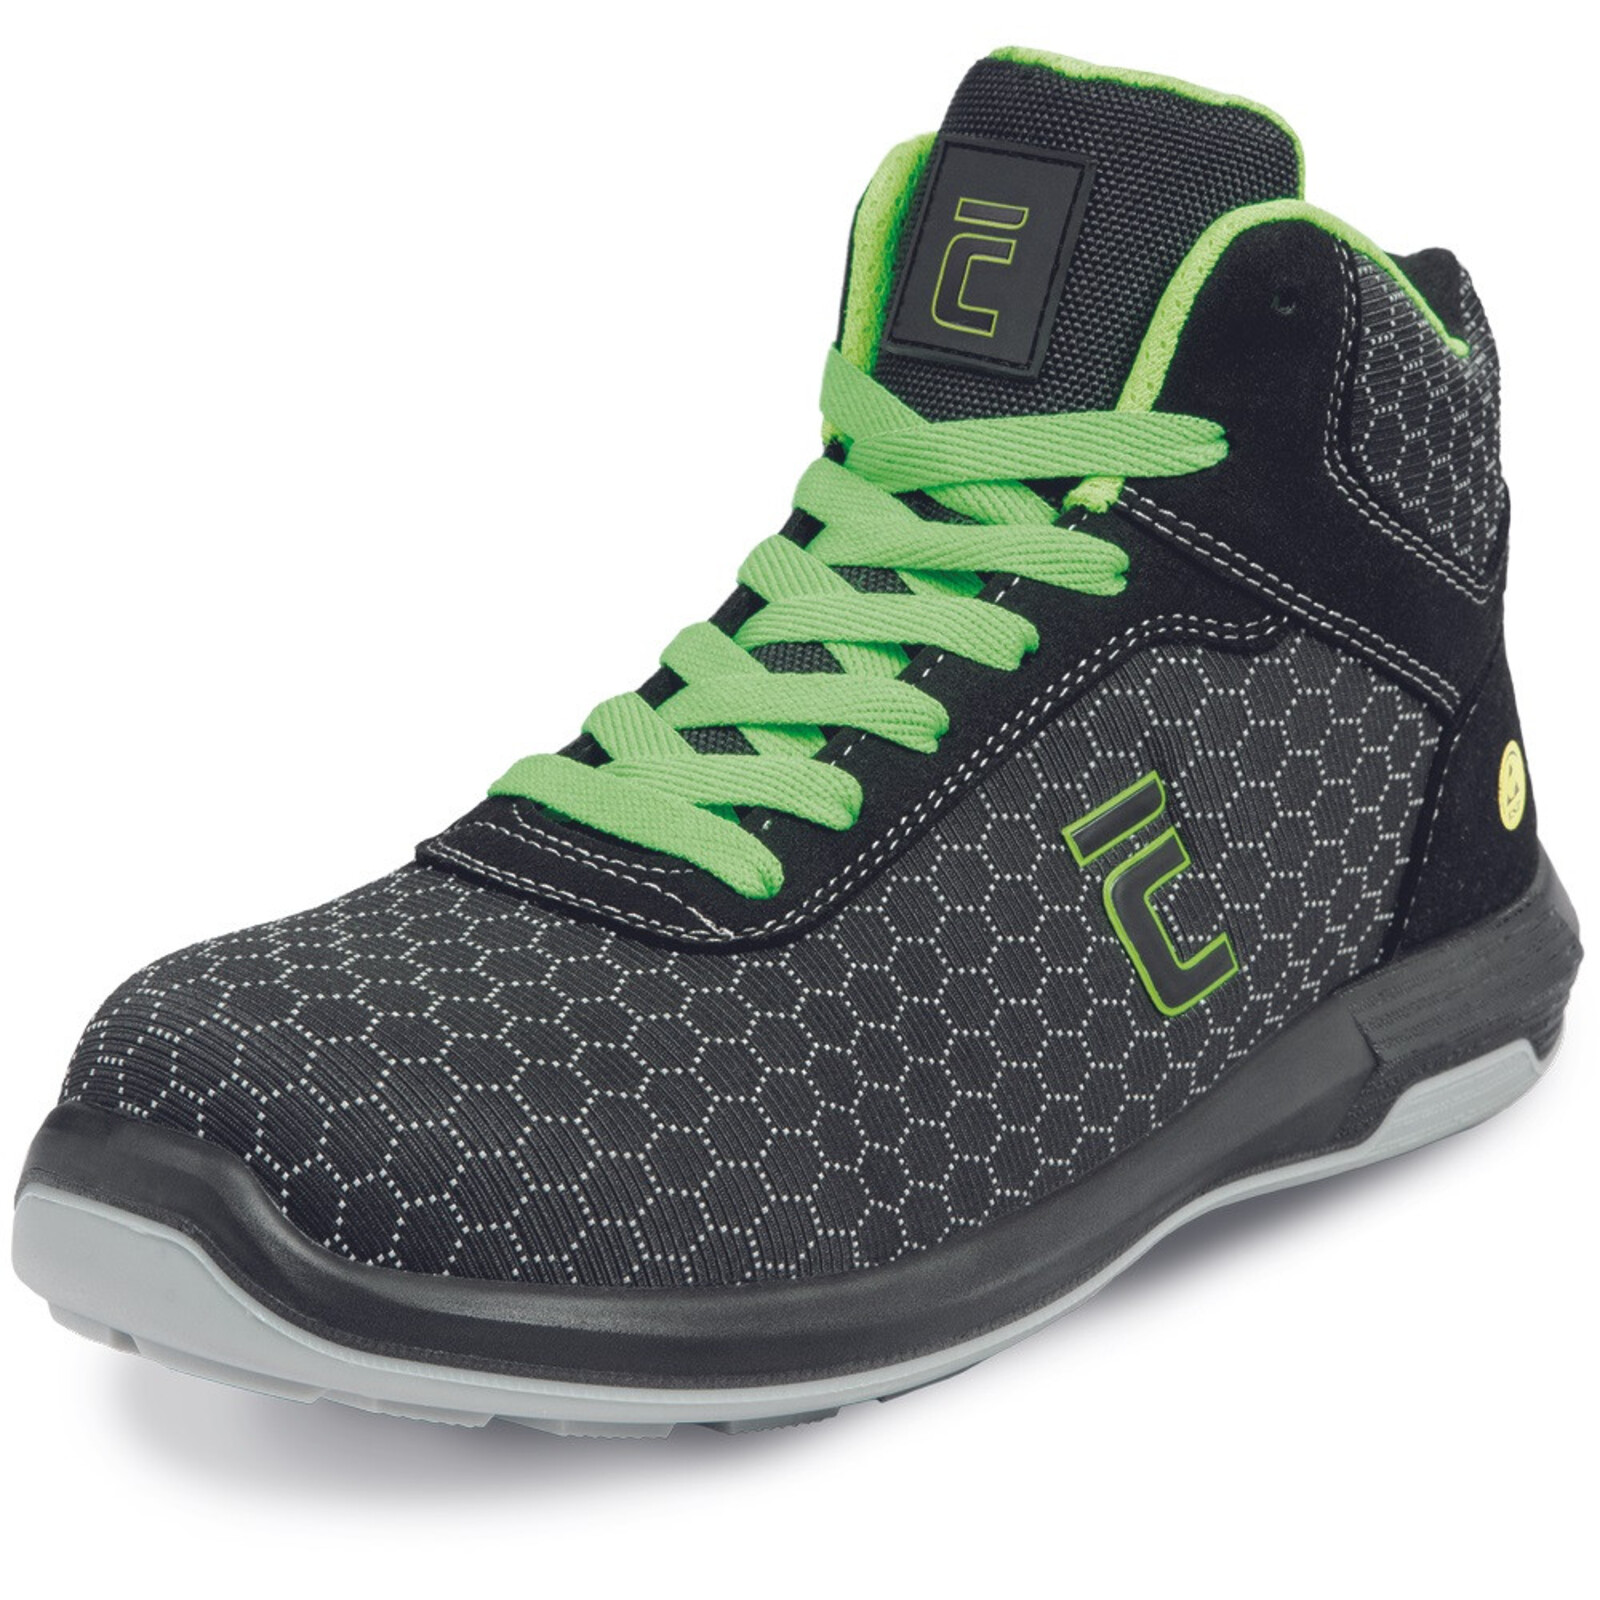 Bezpečnostná členková obuv Cerva Uttendorf MF ESD S3S SR - veľkosť: 45, farba: čierna/zelená